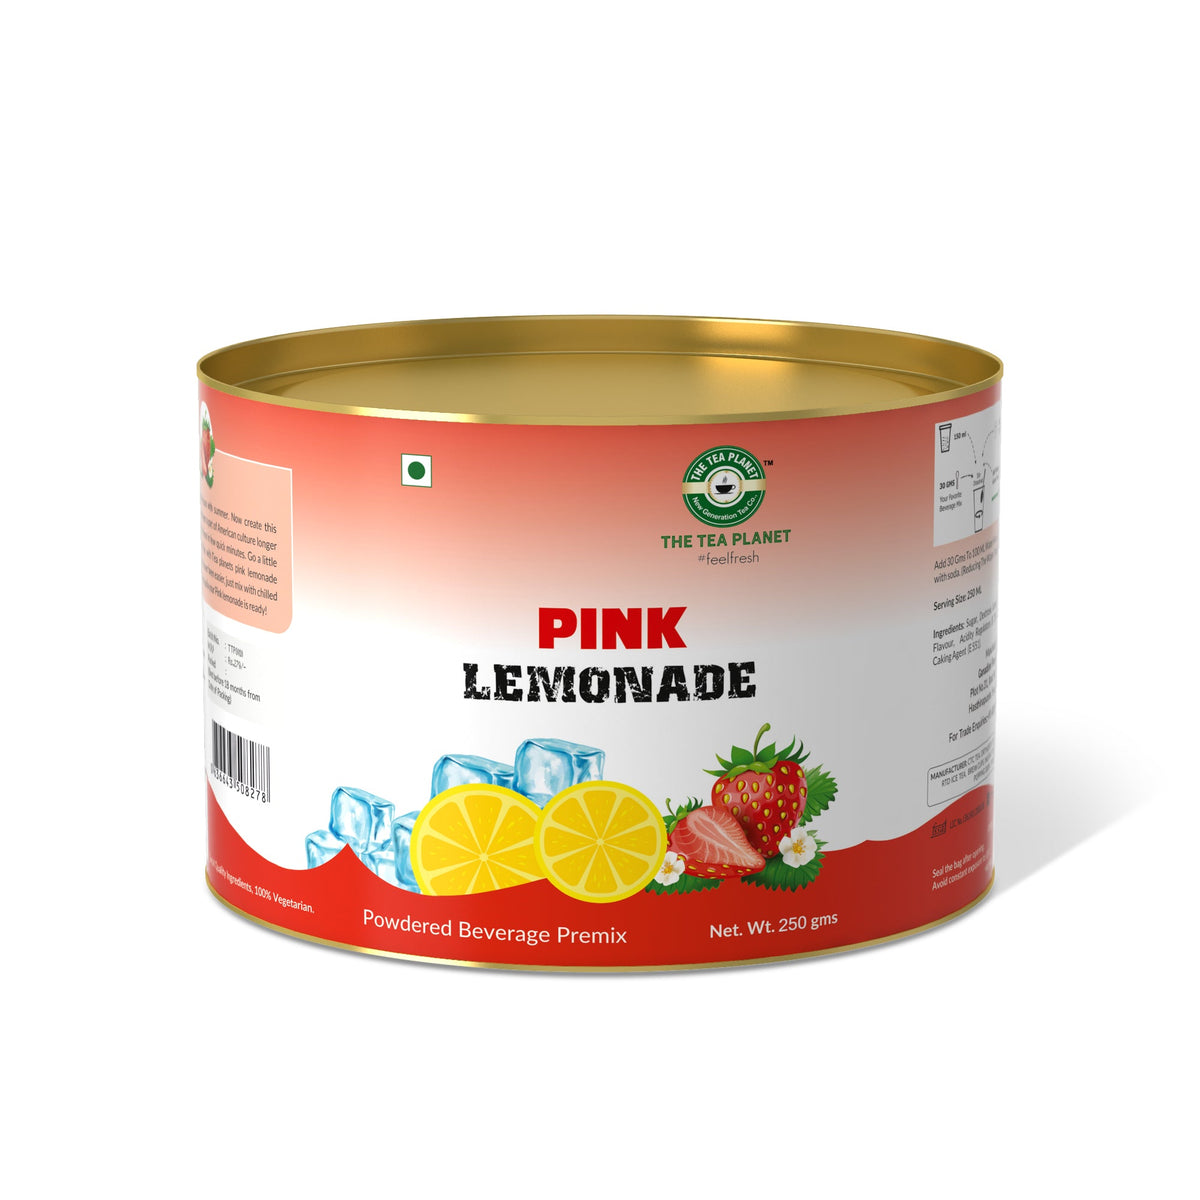 Fresh pink lemonade